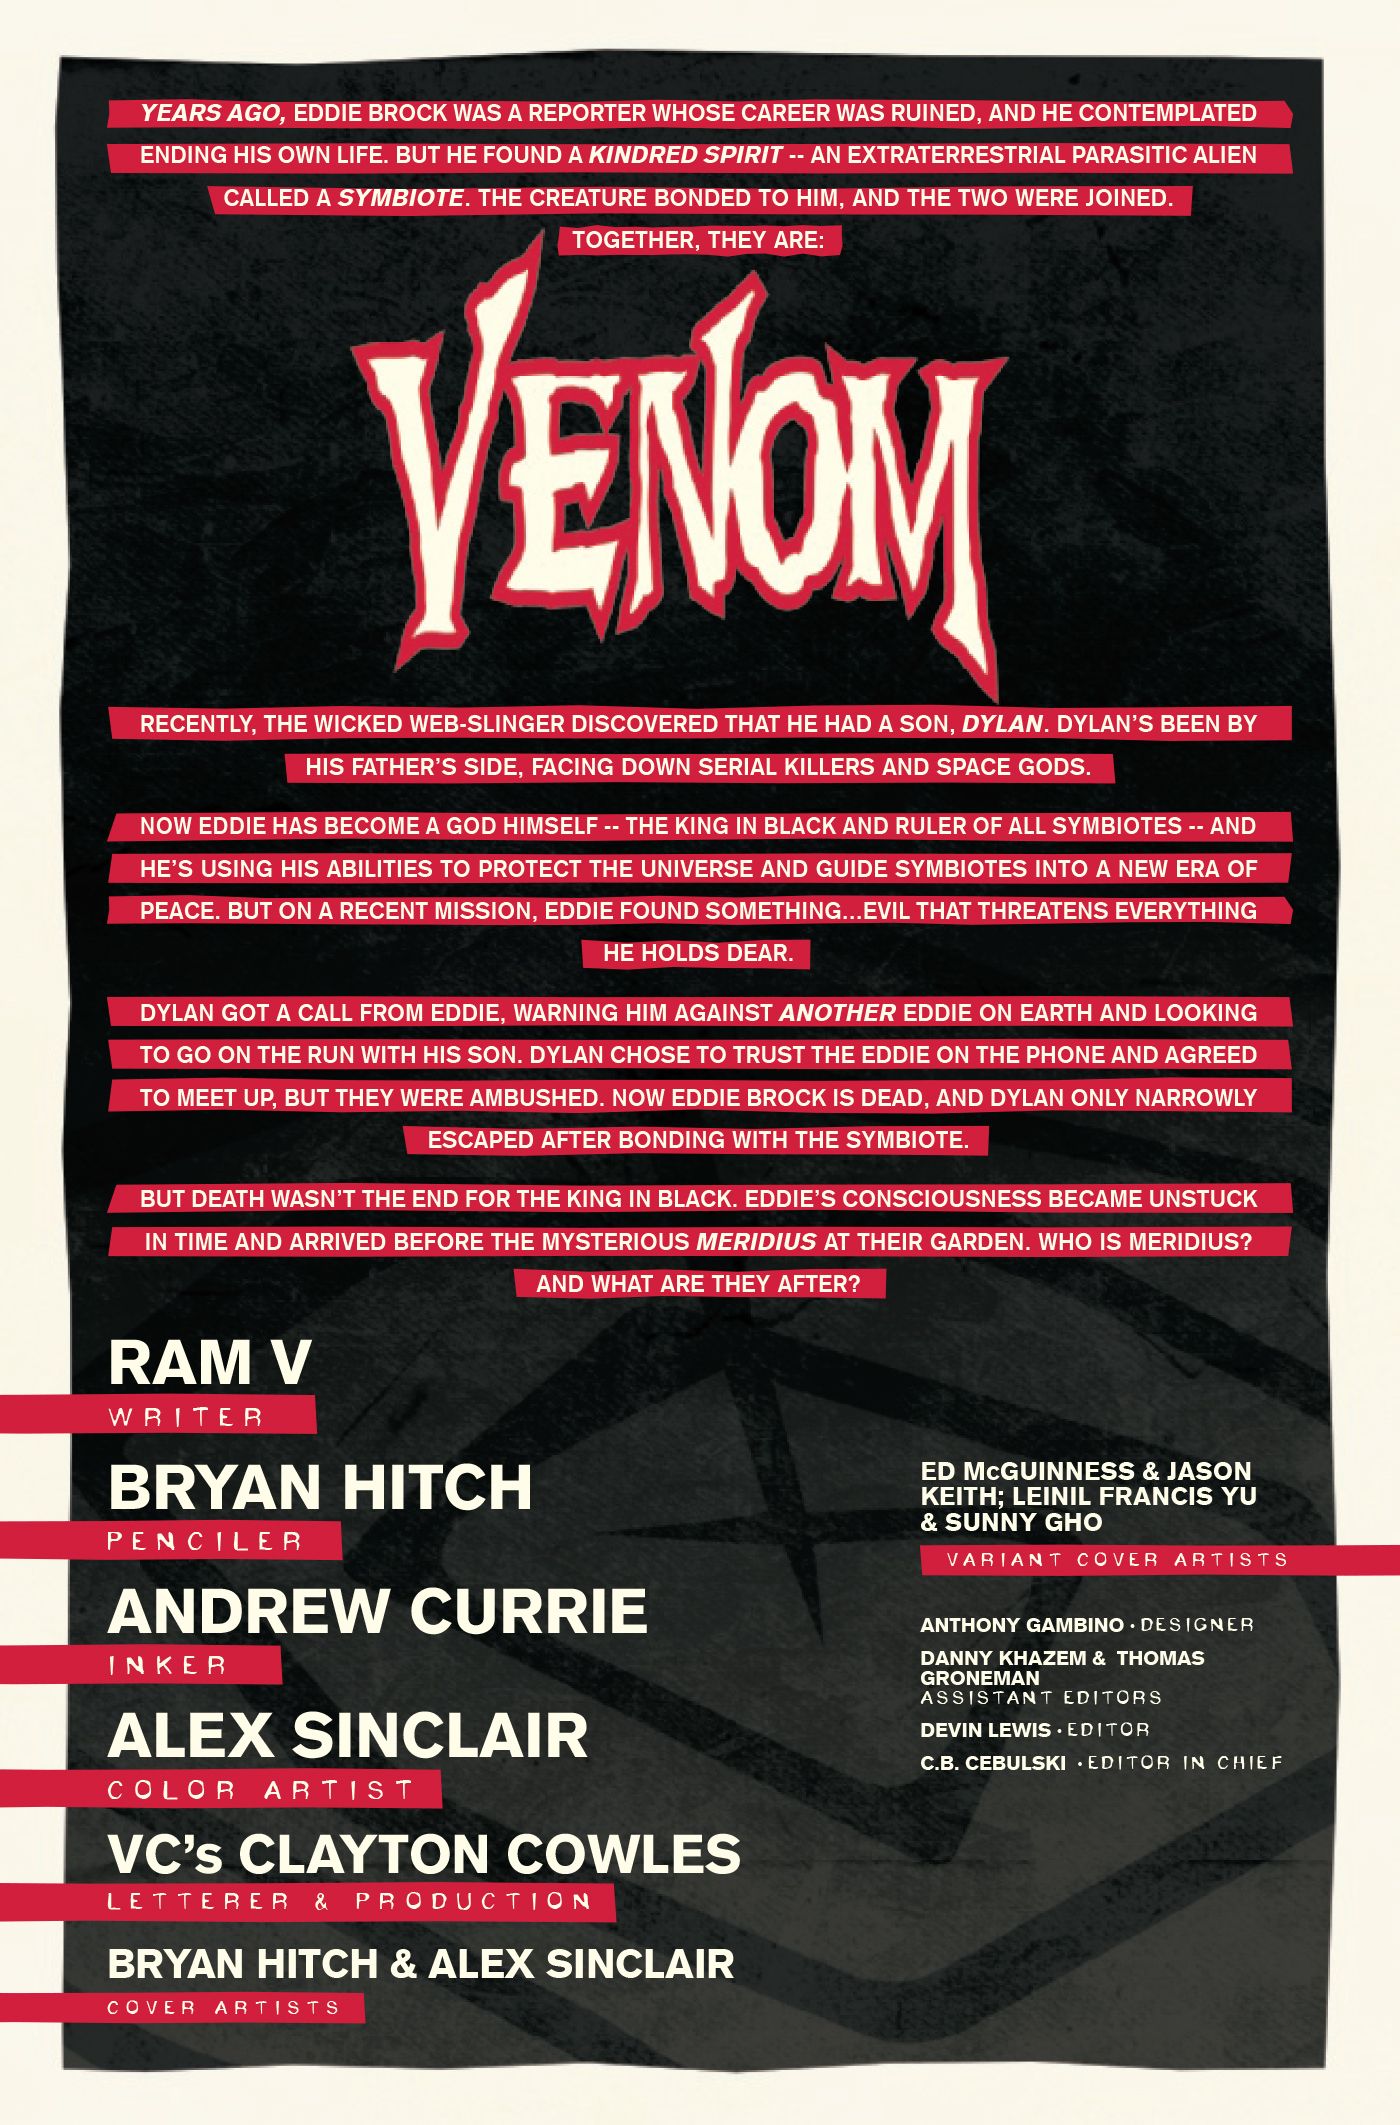 A recap explains what has happened in Venom up until Issue #2.